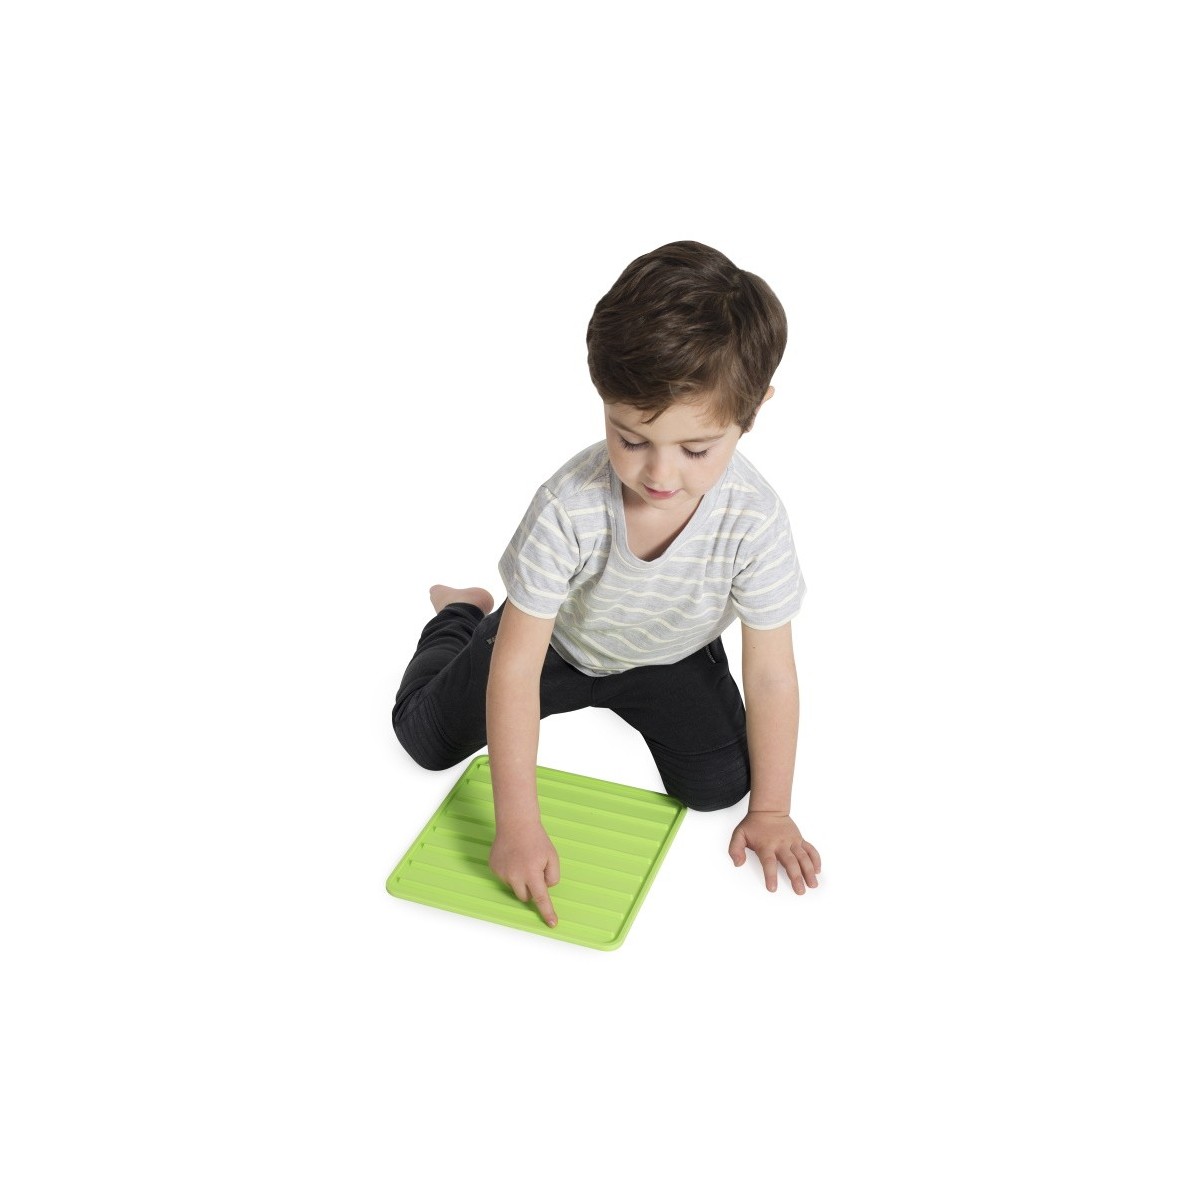 5 tapis sensoriels enfants Tapis sensoriels pour développer les sensations motrices chez les enfants.
Le kit inclut 5 tapis sen